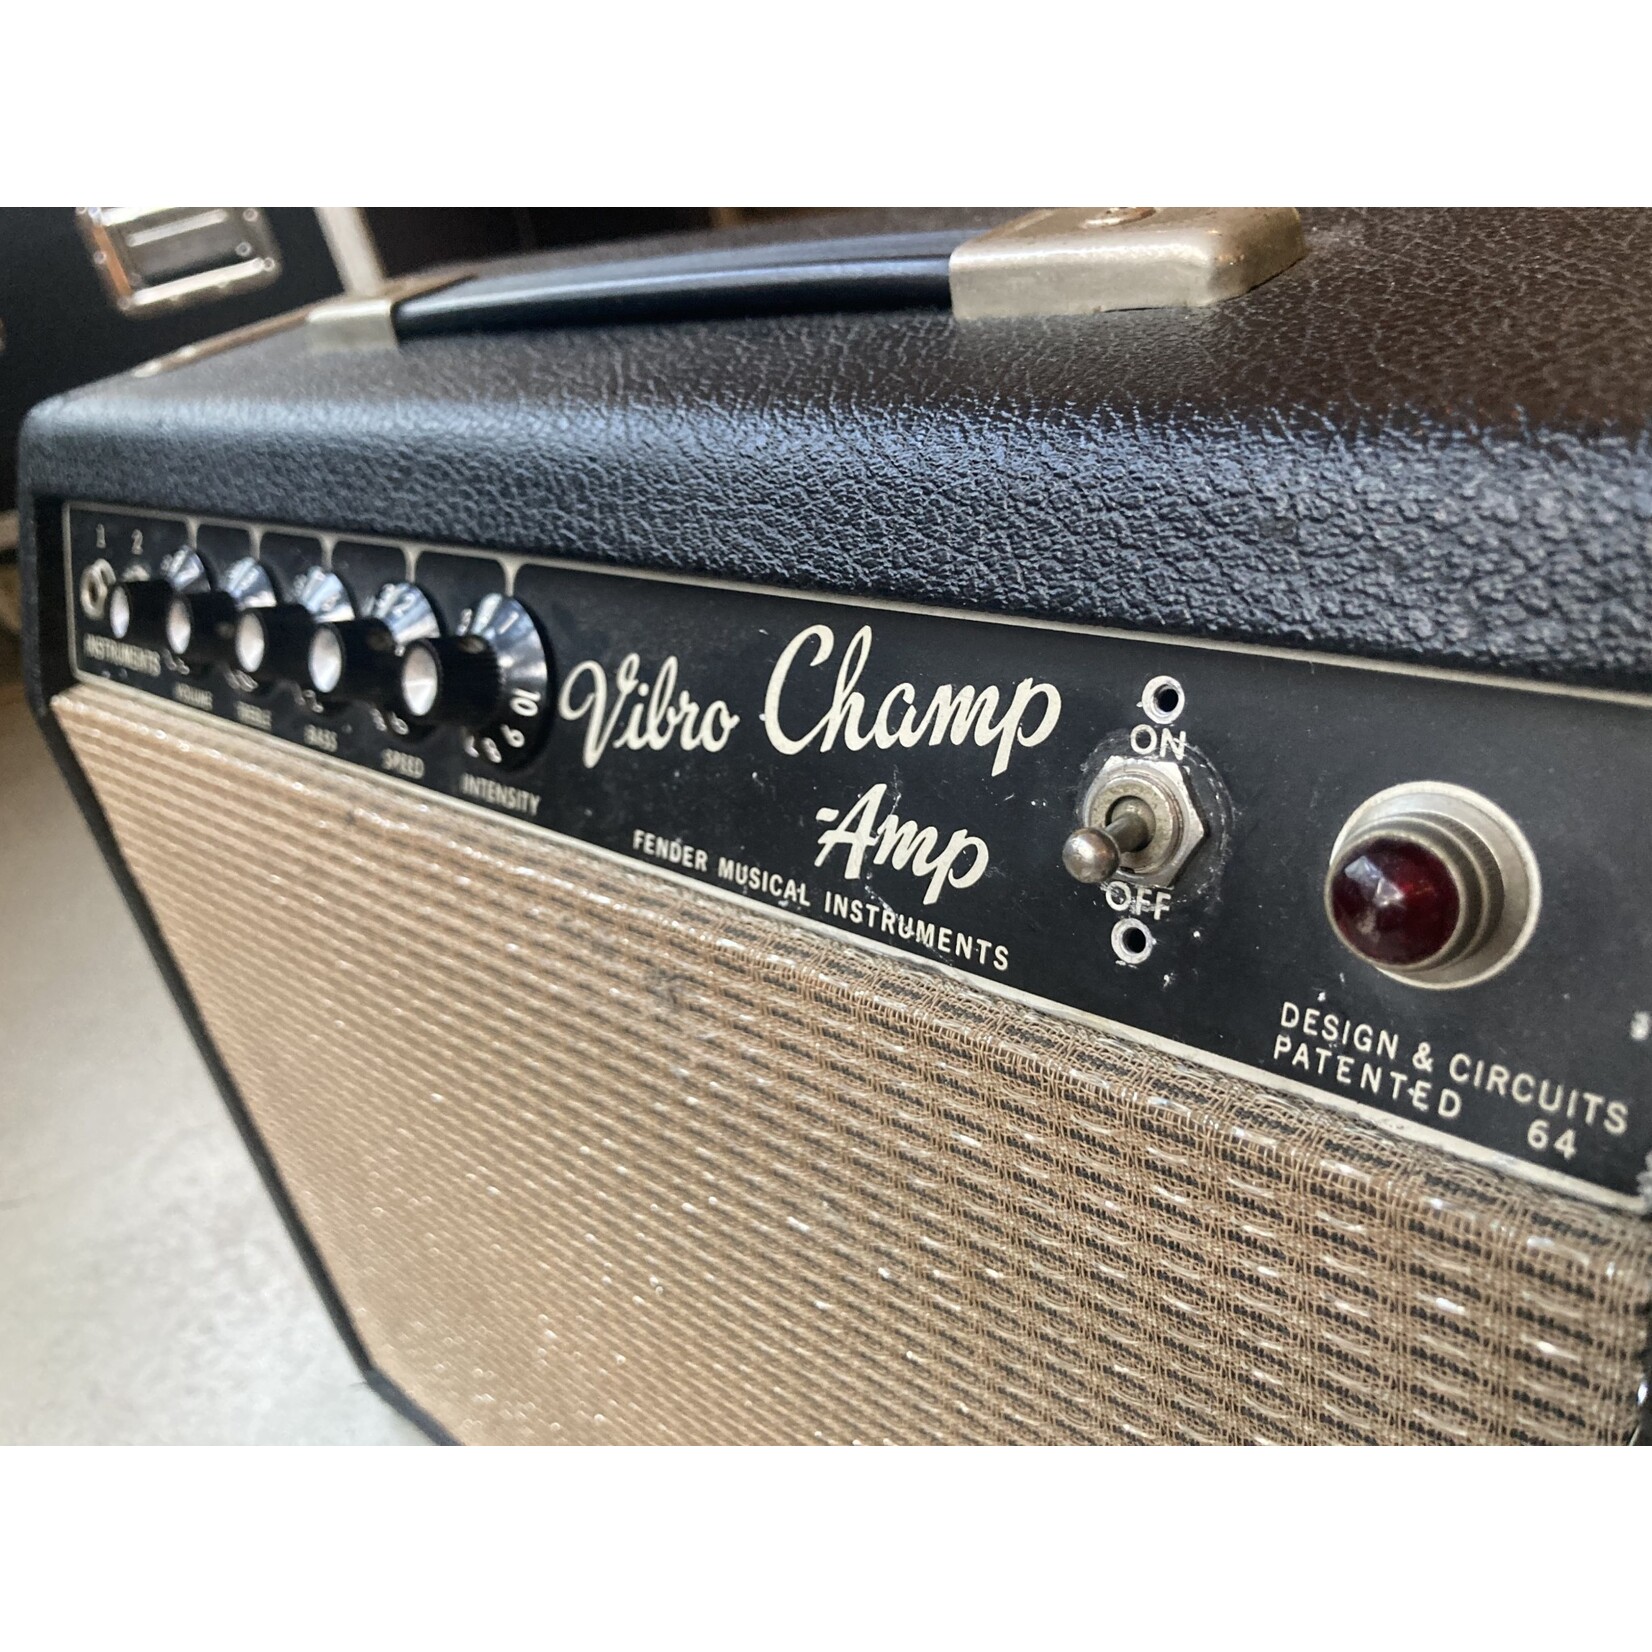 Fender Fender Vibro Champ 1965 pre owned